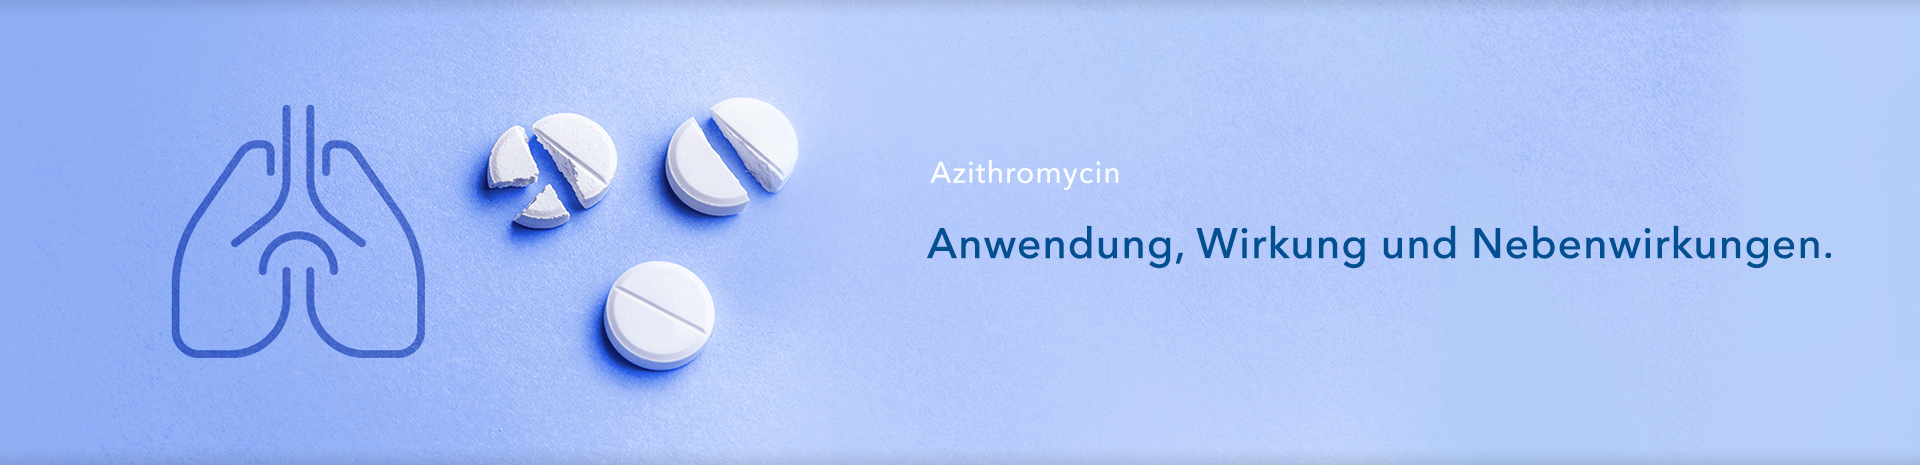 Azithromycin - Anwendung, Wirkung und Nebenwirkungen